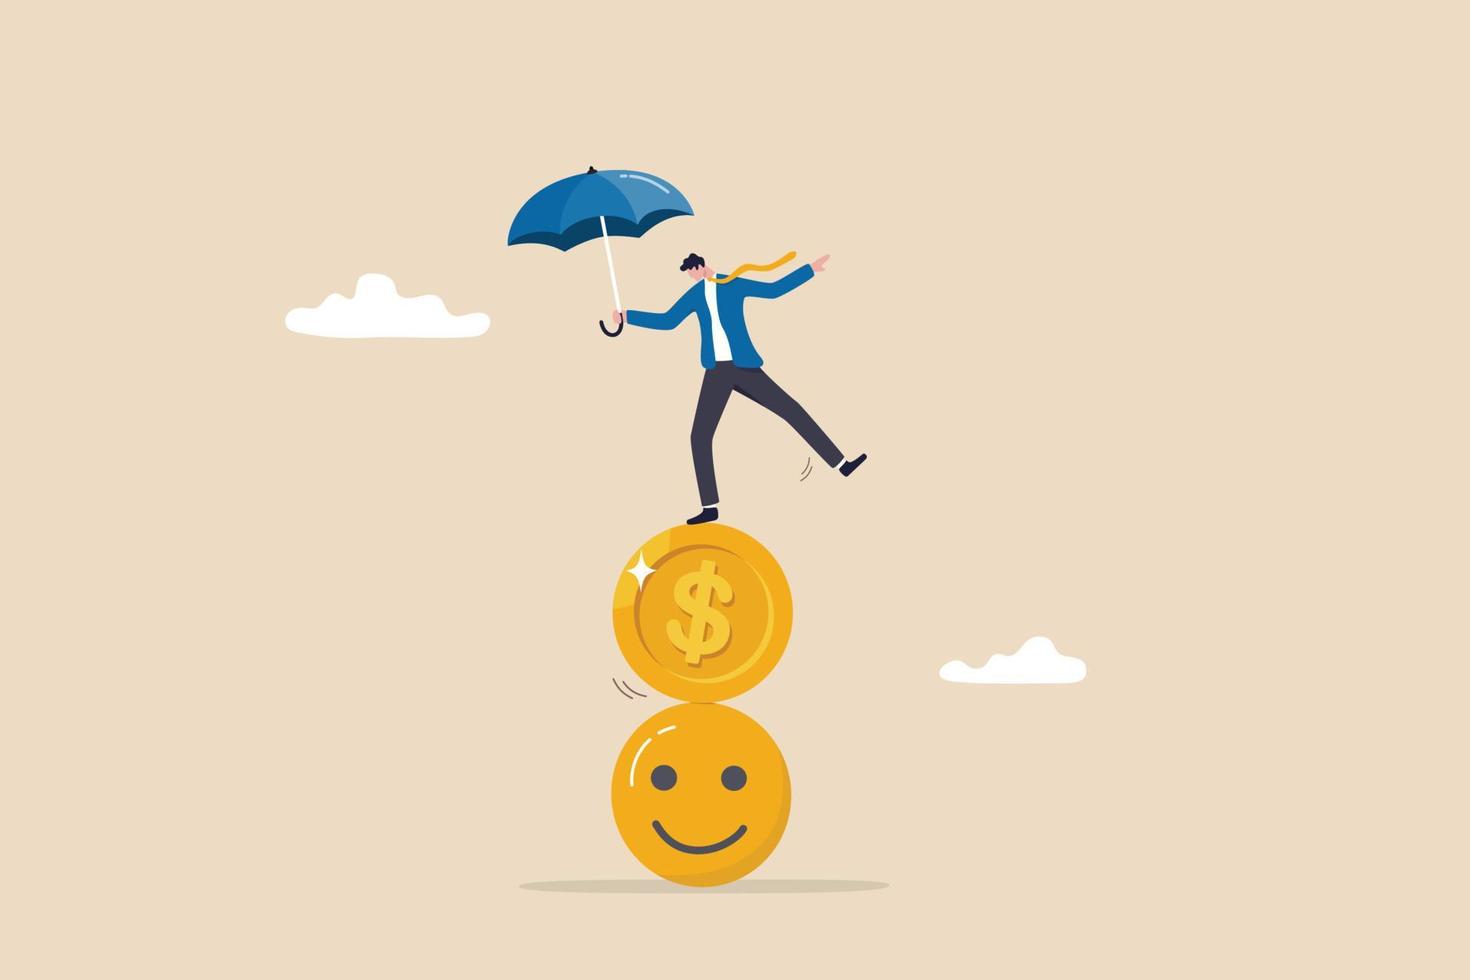 équilibre entre argent et bonheur, richesse et santé, choix d'une vie significative et d'un véritable concept de réussite, homme d'affaires tenant un parapluie s'équilibrant sur une pile de visage souriant et de pièce d'un dollar. vecteur